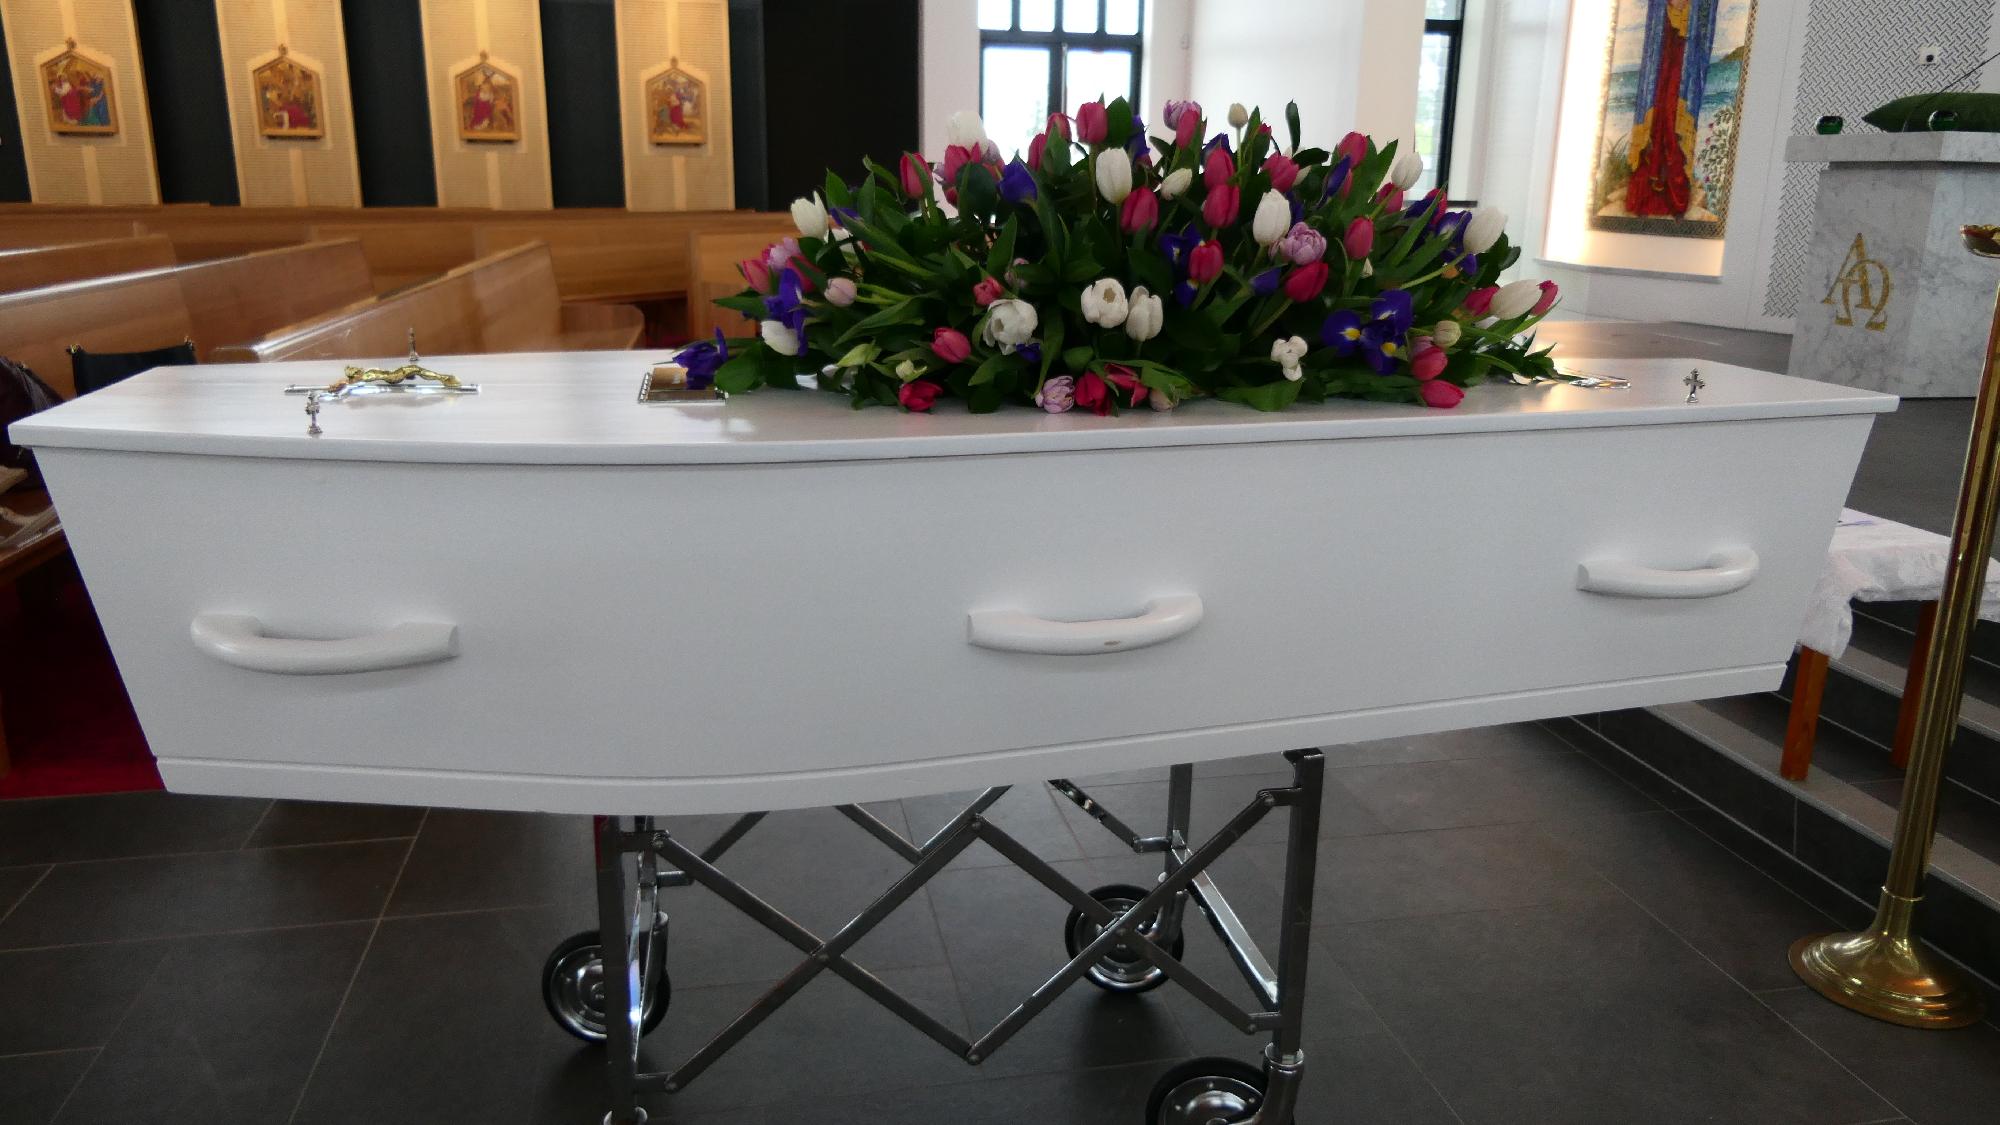 Digitálisan felélesztett halottak: sikeres gyászfeldolgozás vagy morbid megoldás?